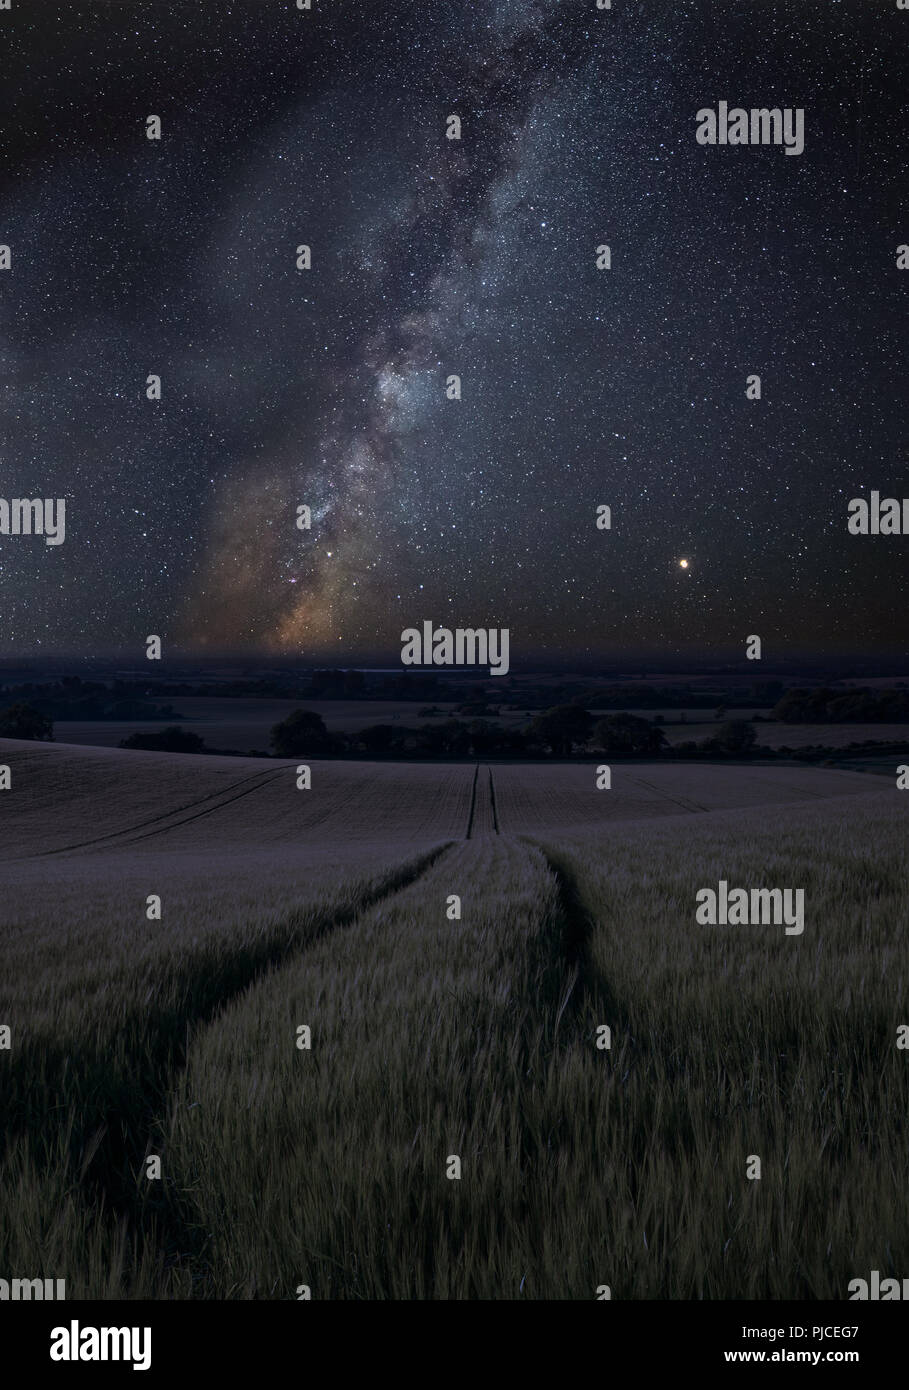 Impresionante vibrante Vía Láctea imagen compuesta a lo largo de paisaje de campo de trigo Foto de stock